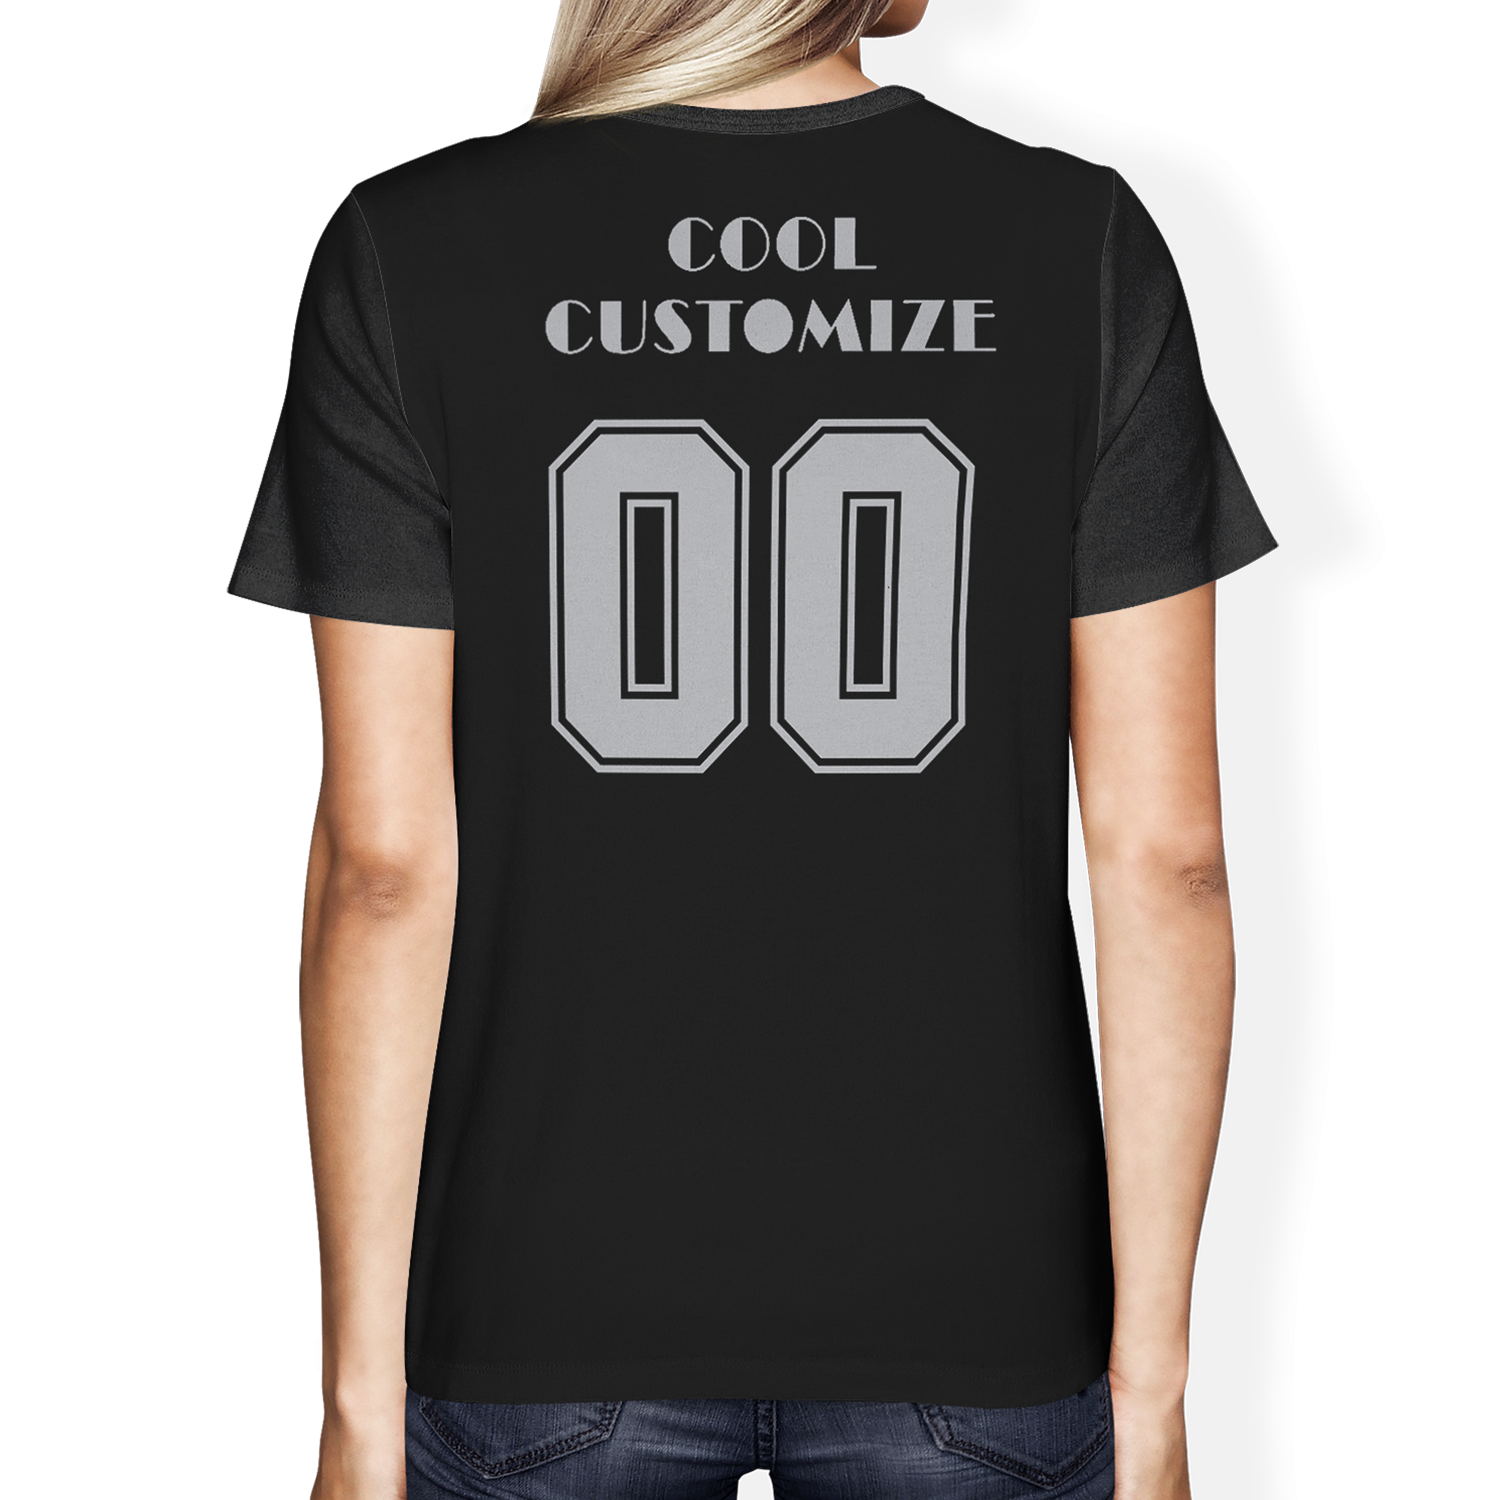 Hot Sell Custom Design Full Print on Demand Short Sleeve T-shirt for Men/Women